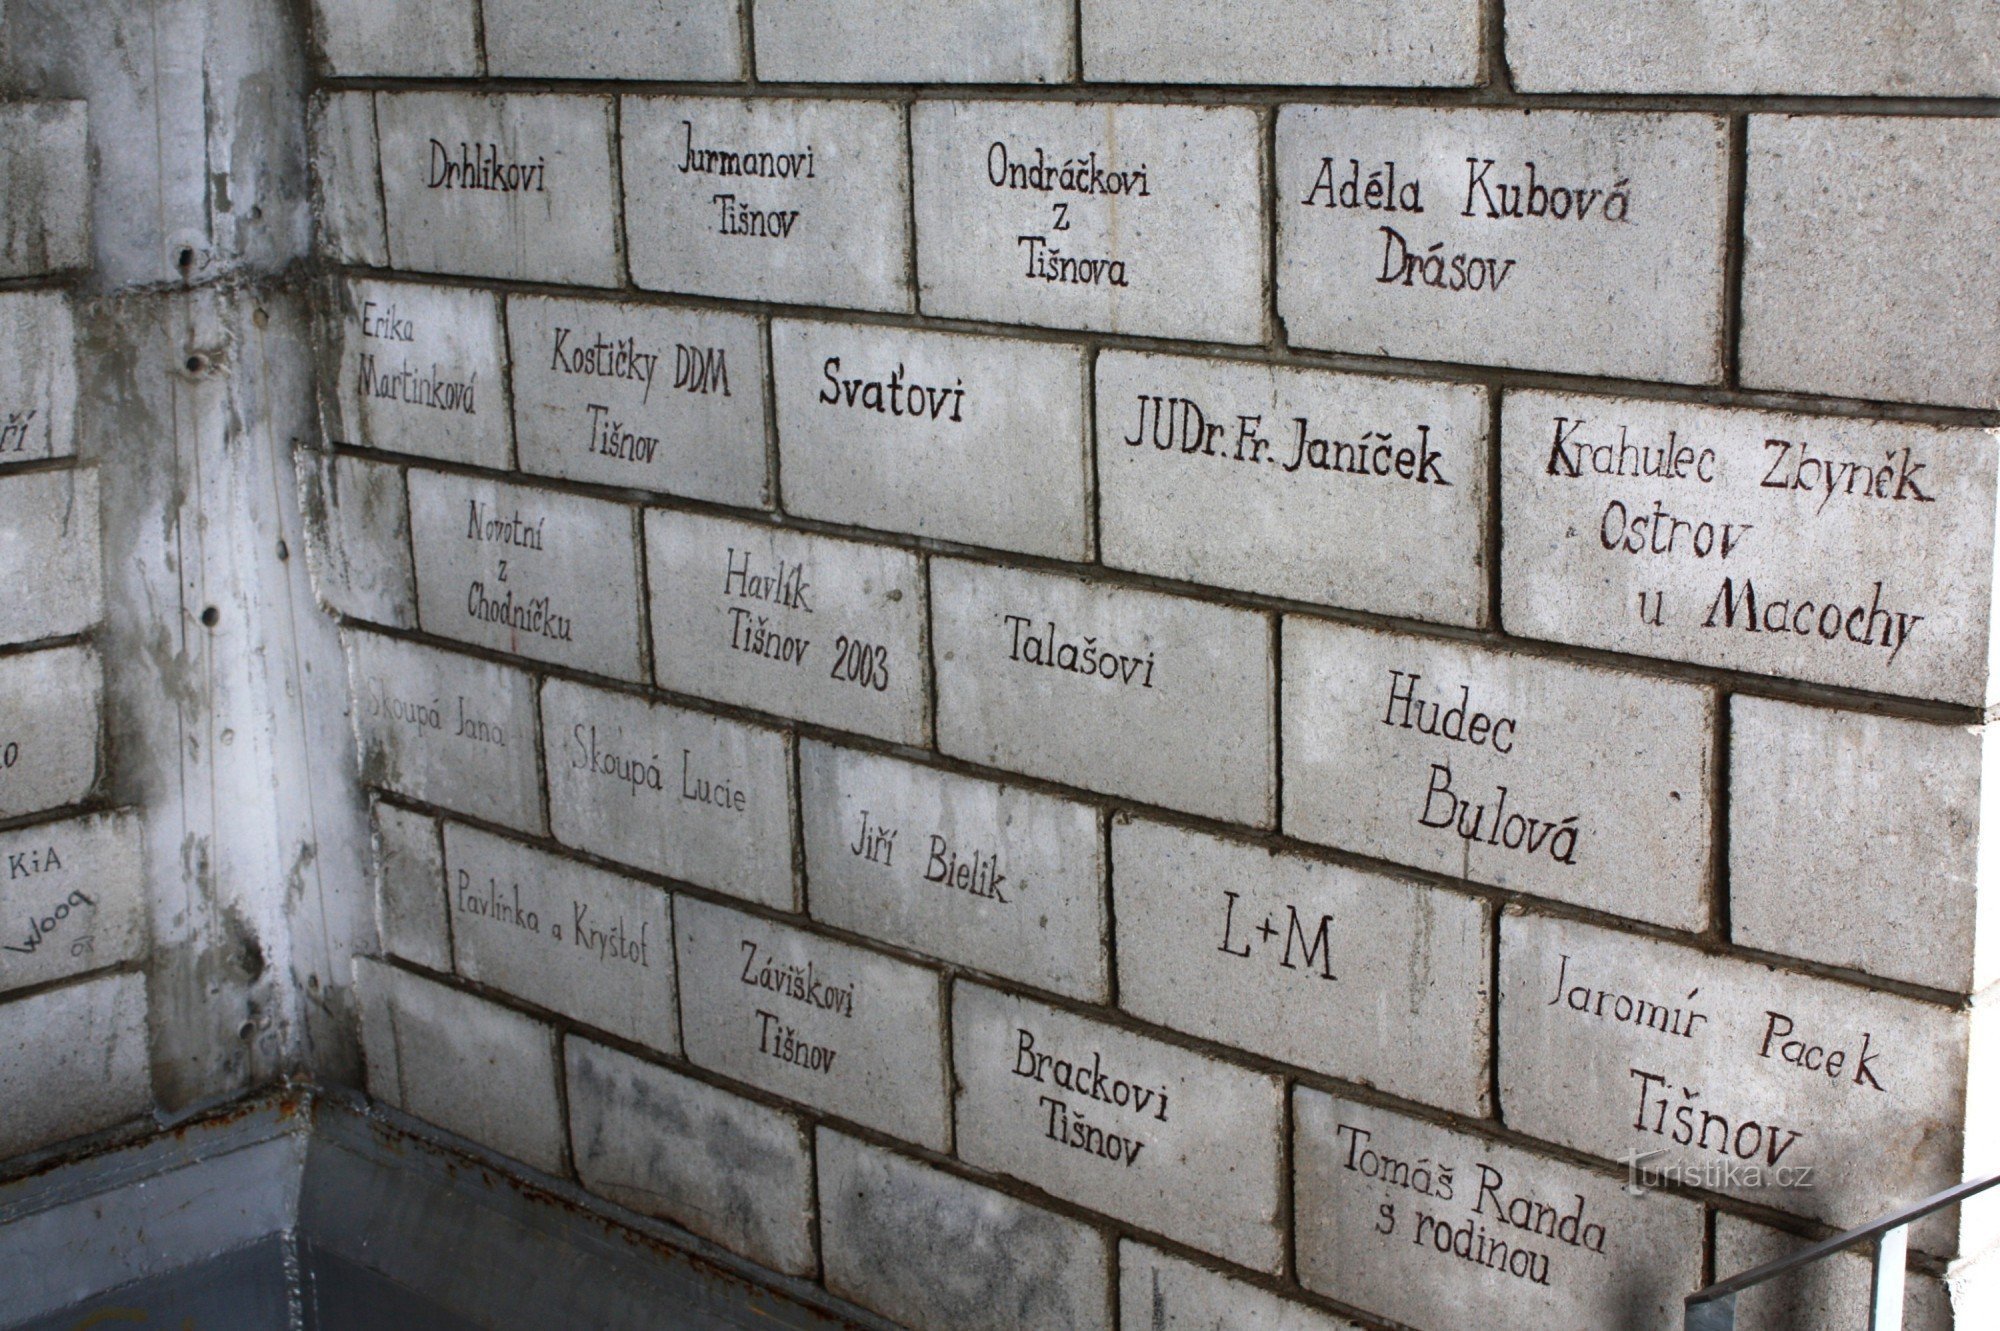 Sponsor bricks on the observation tower